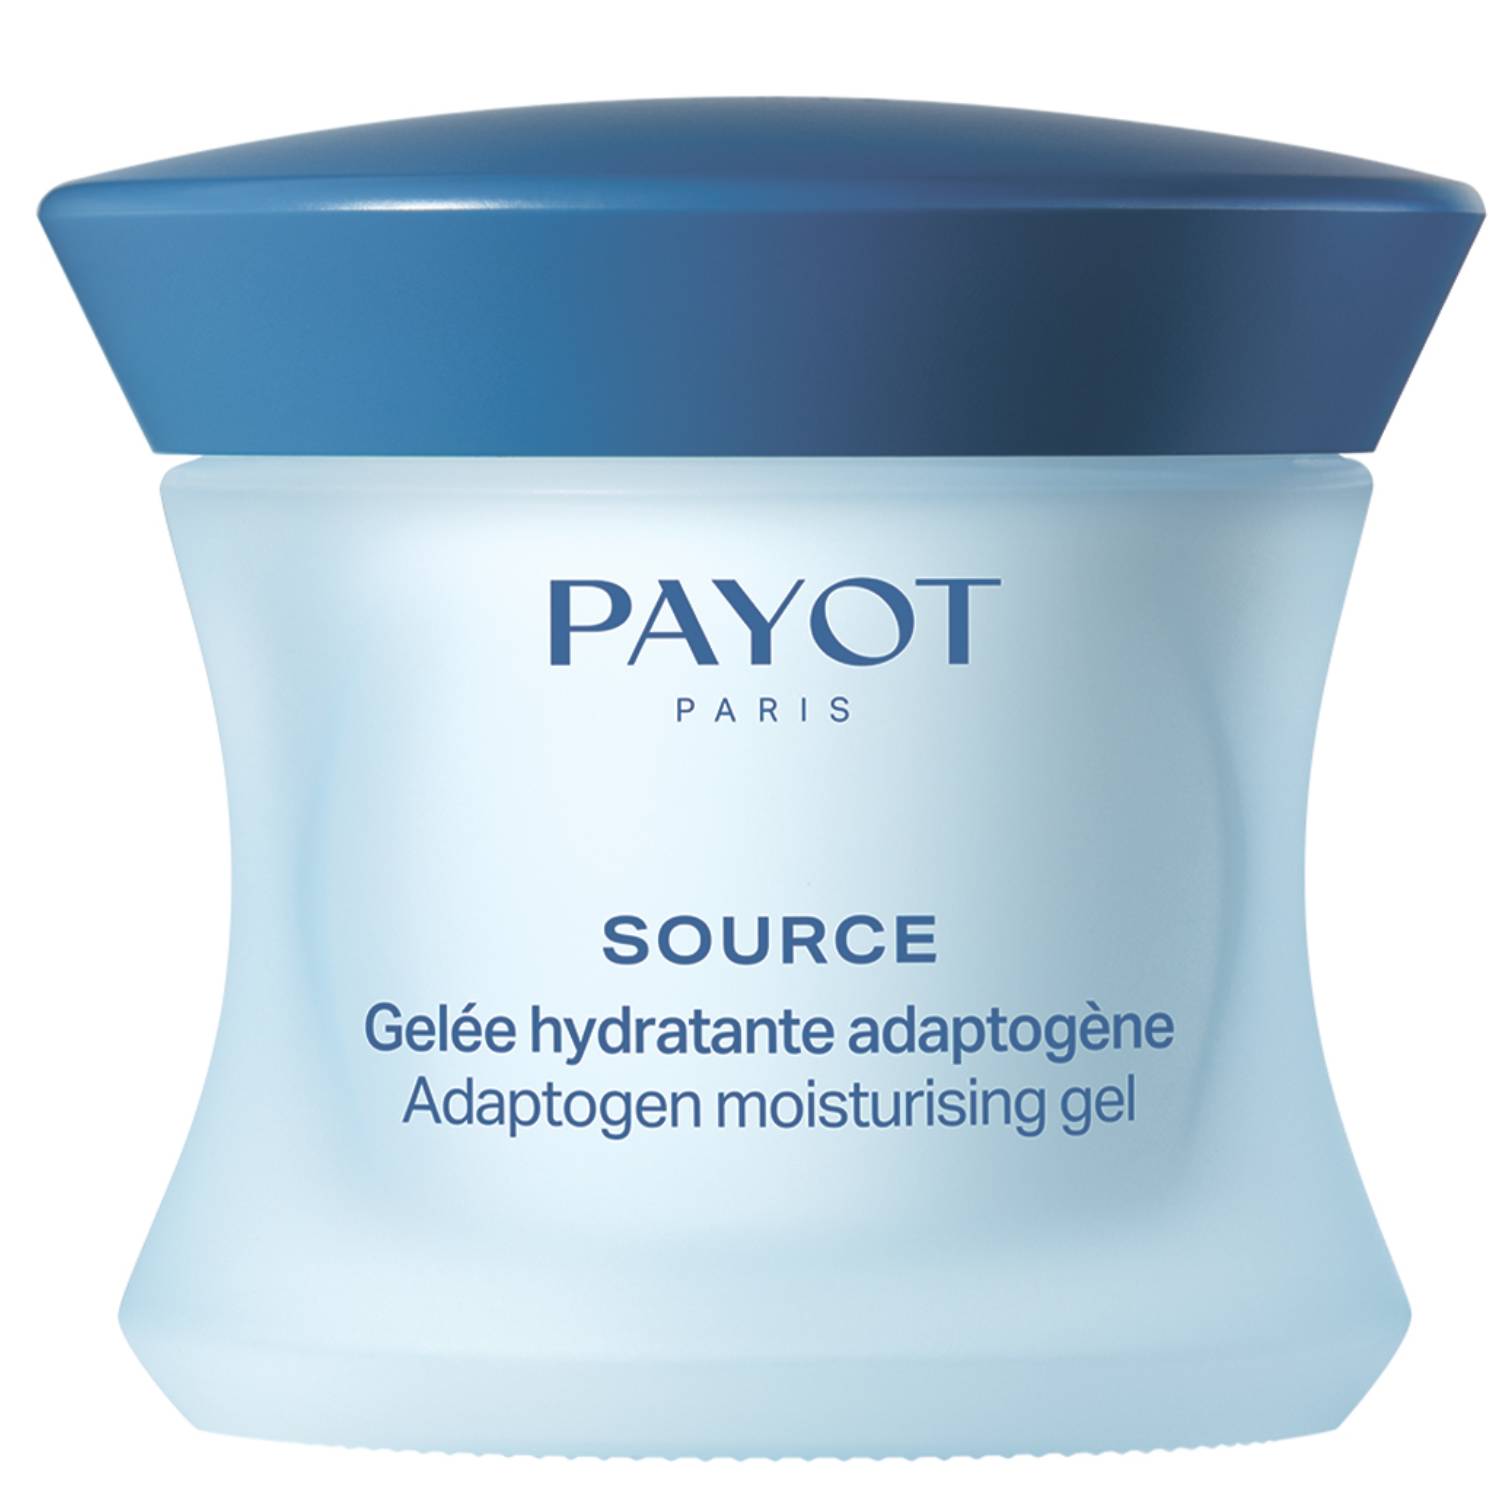 Payot Увлажняющий крем-гель для нормальной и комбинированной кожи лица Adaptogen Moisturising Gel, 50 мл (Payot, Source)